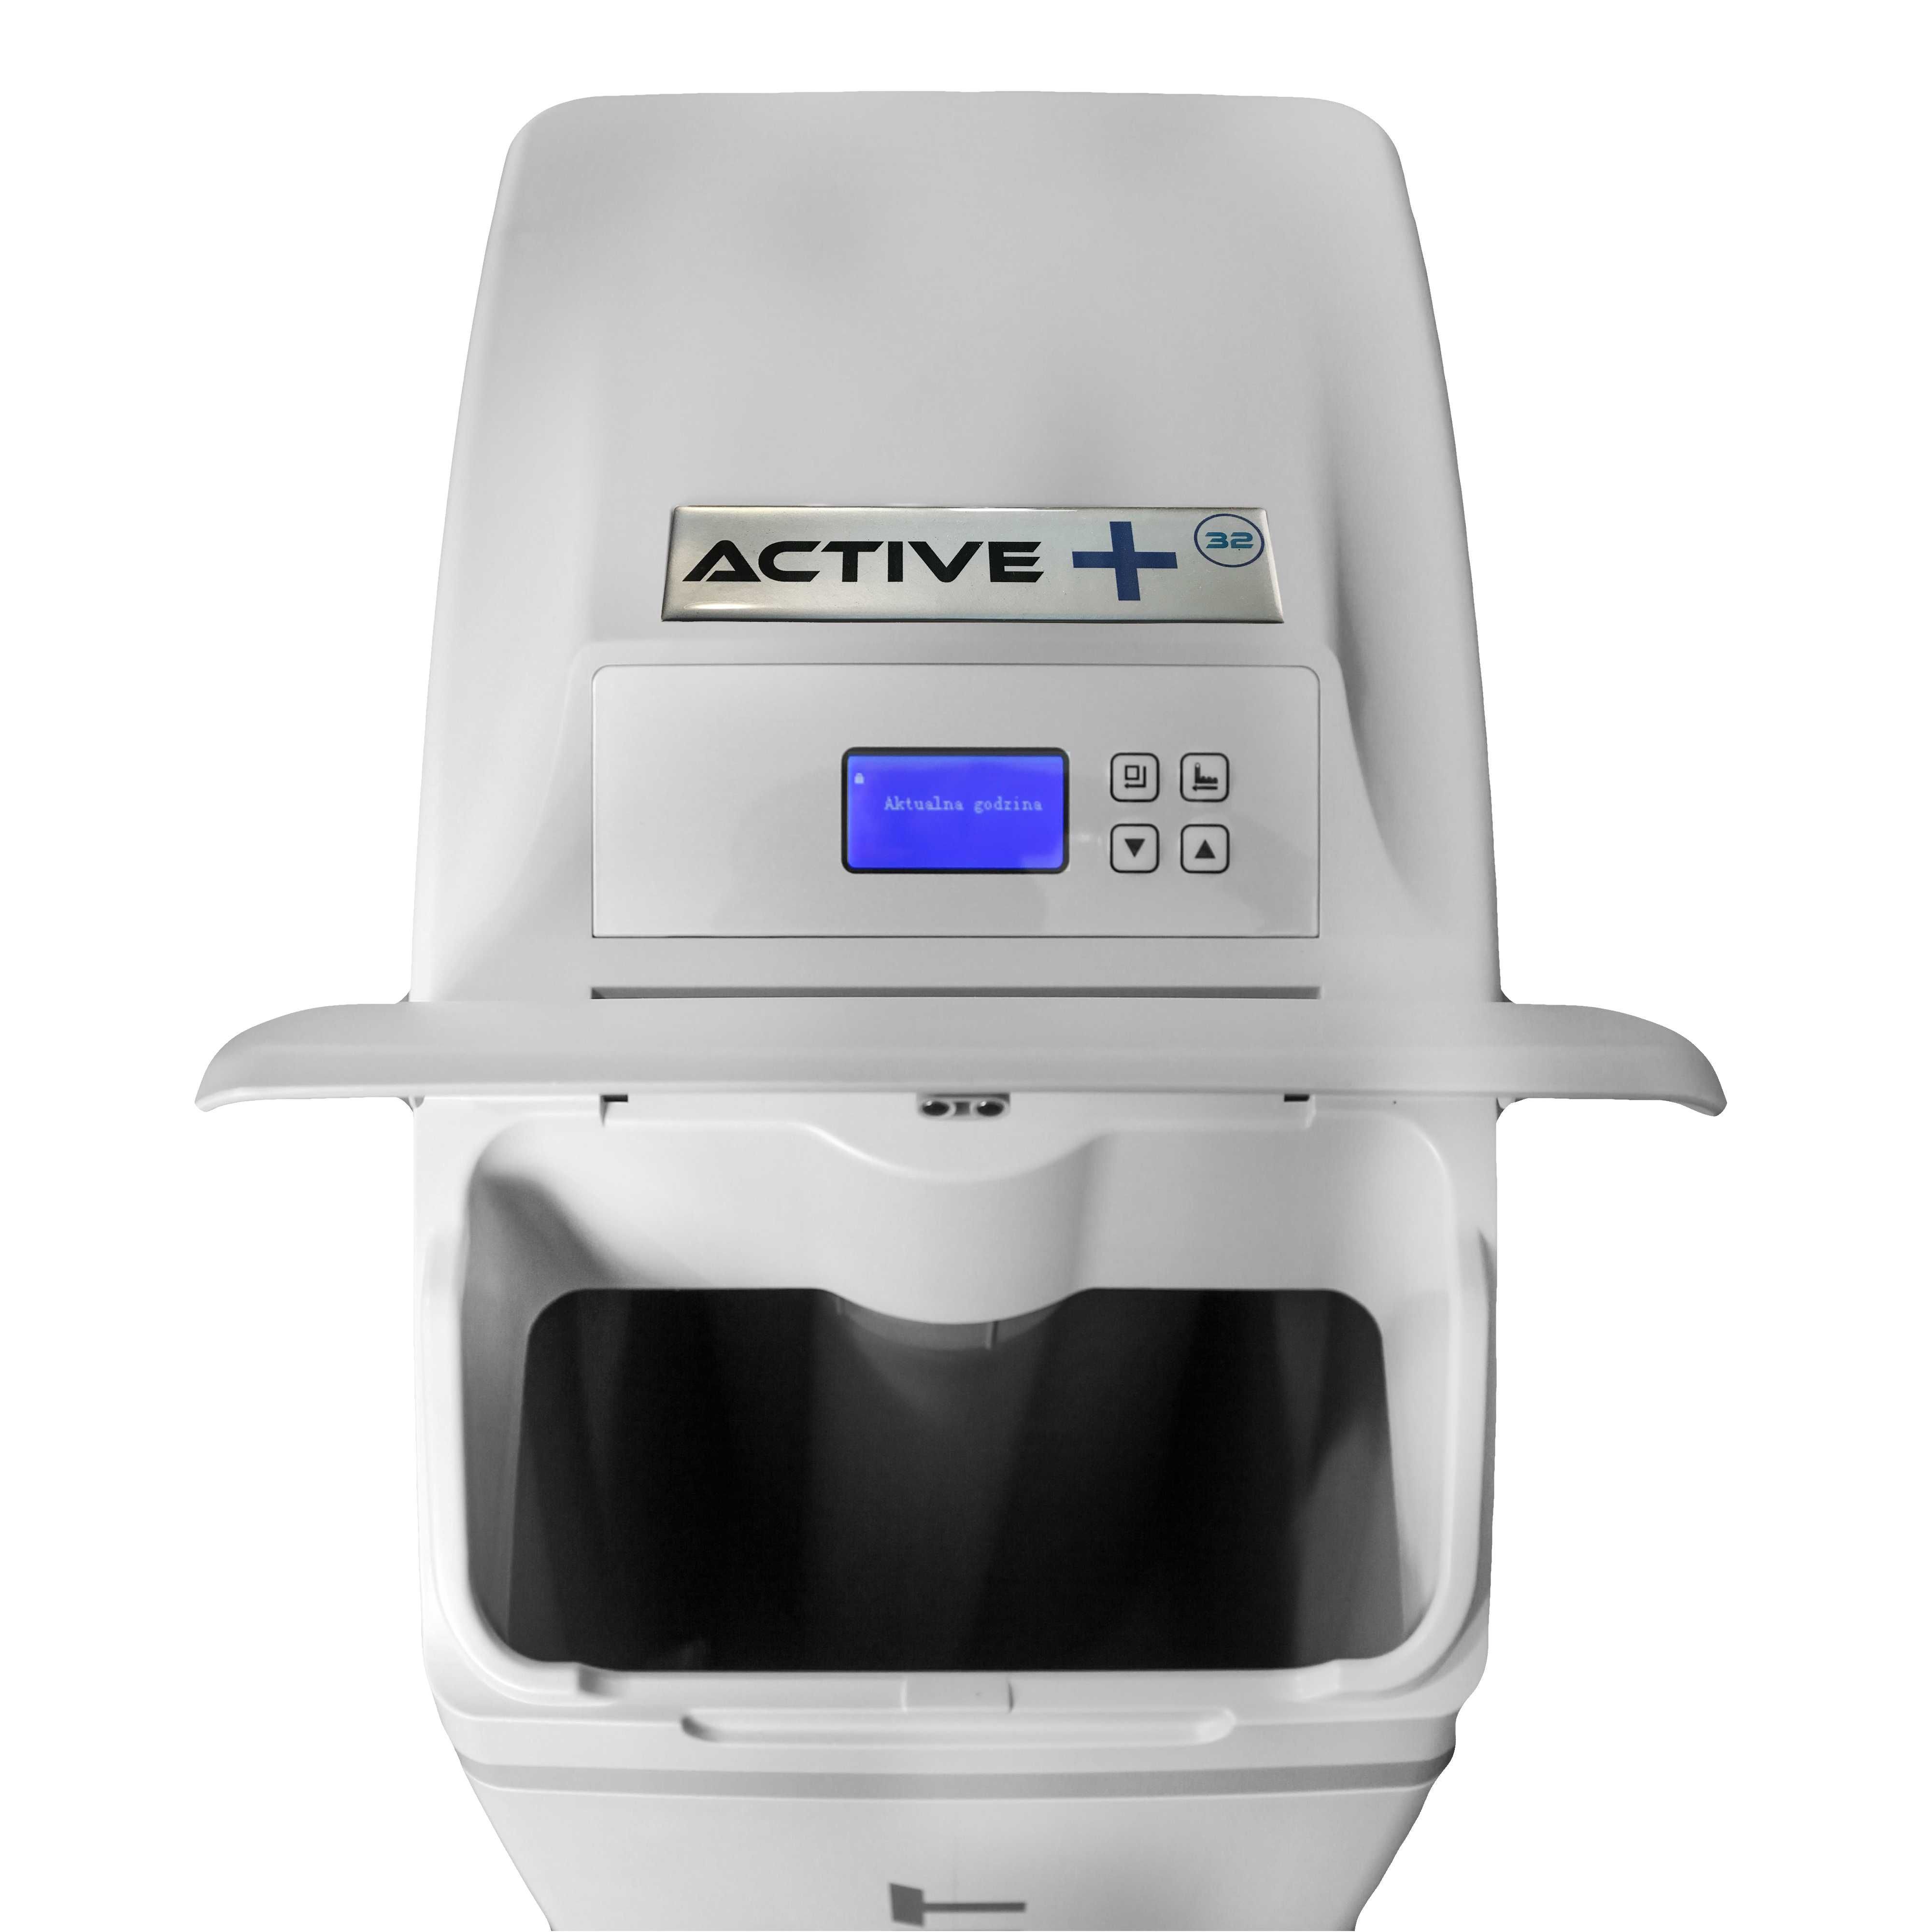 Uzdatniacz do wody Aquafit Active Plus 32 L duża rodzina.